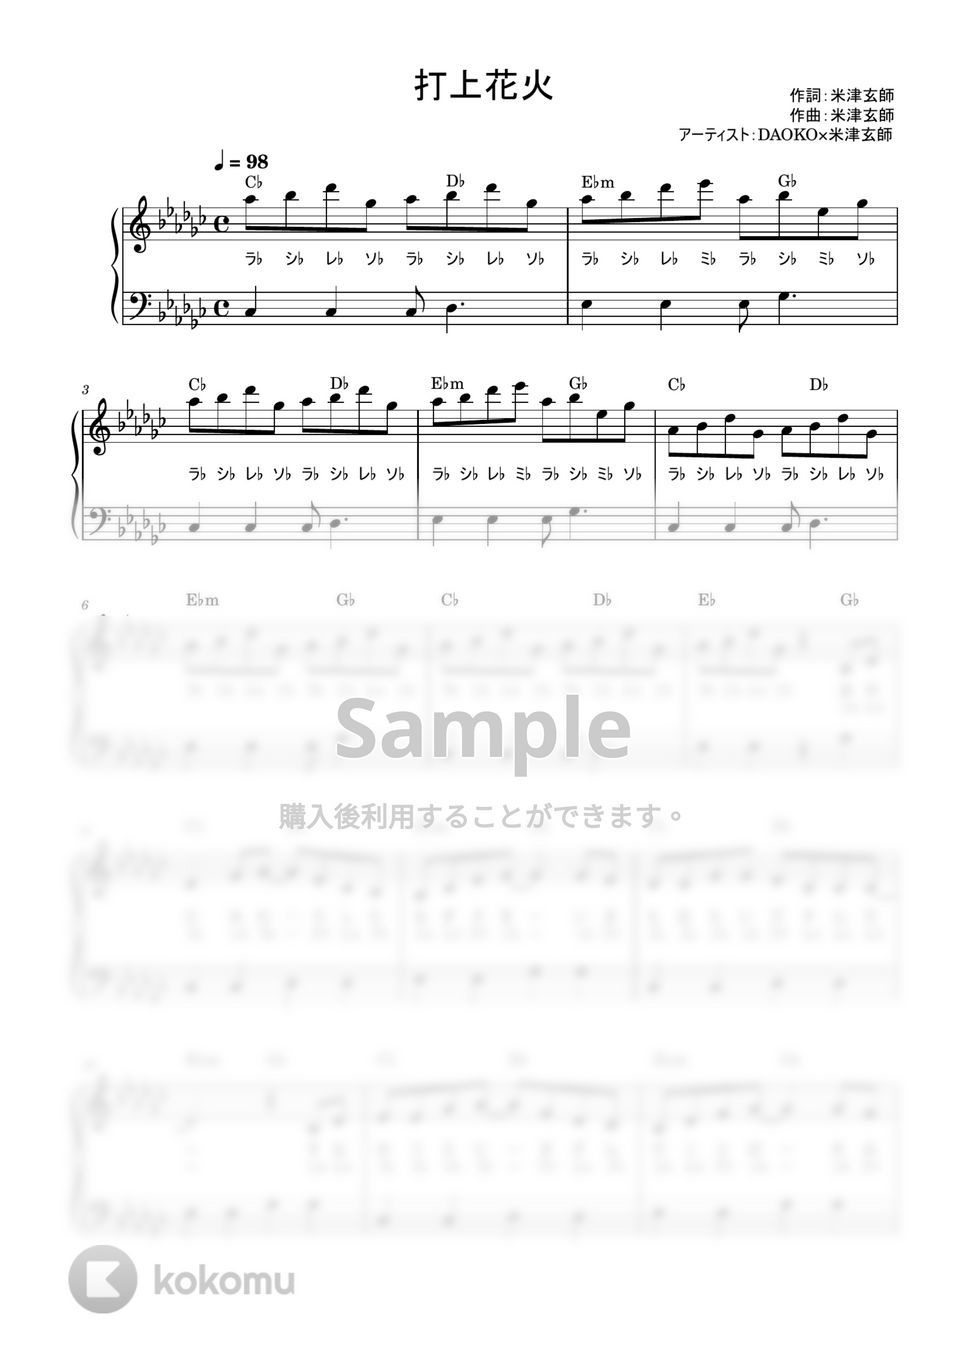 DAOKO×米津玄師 - 打上花火 (かんたん / 歌詞付き / ドレミ付き / 初心者) by piano.tokyo